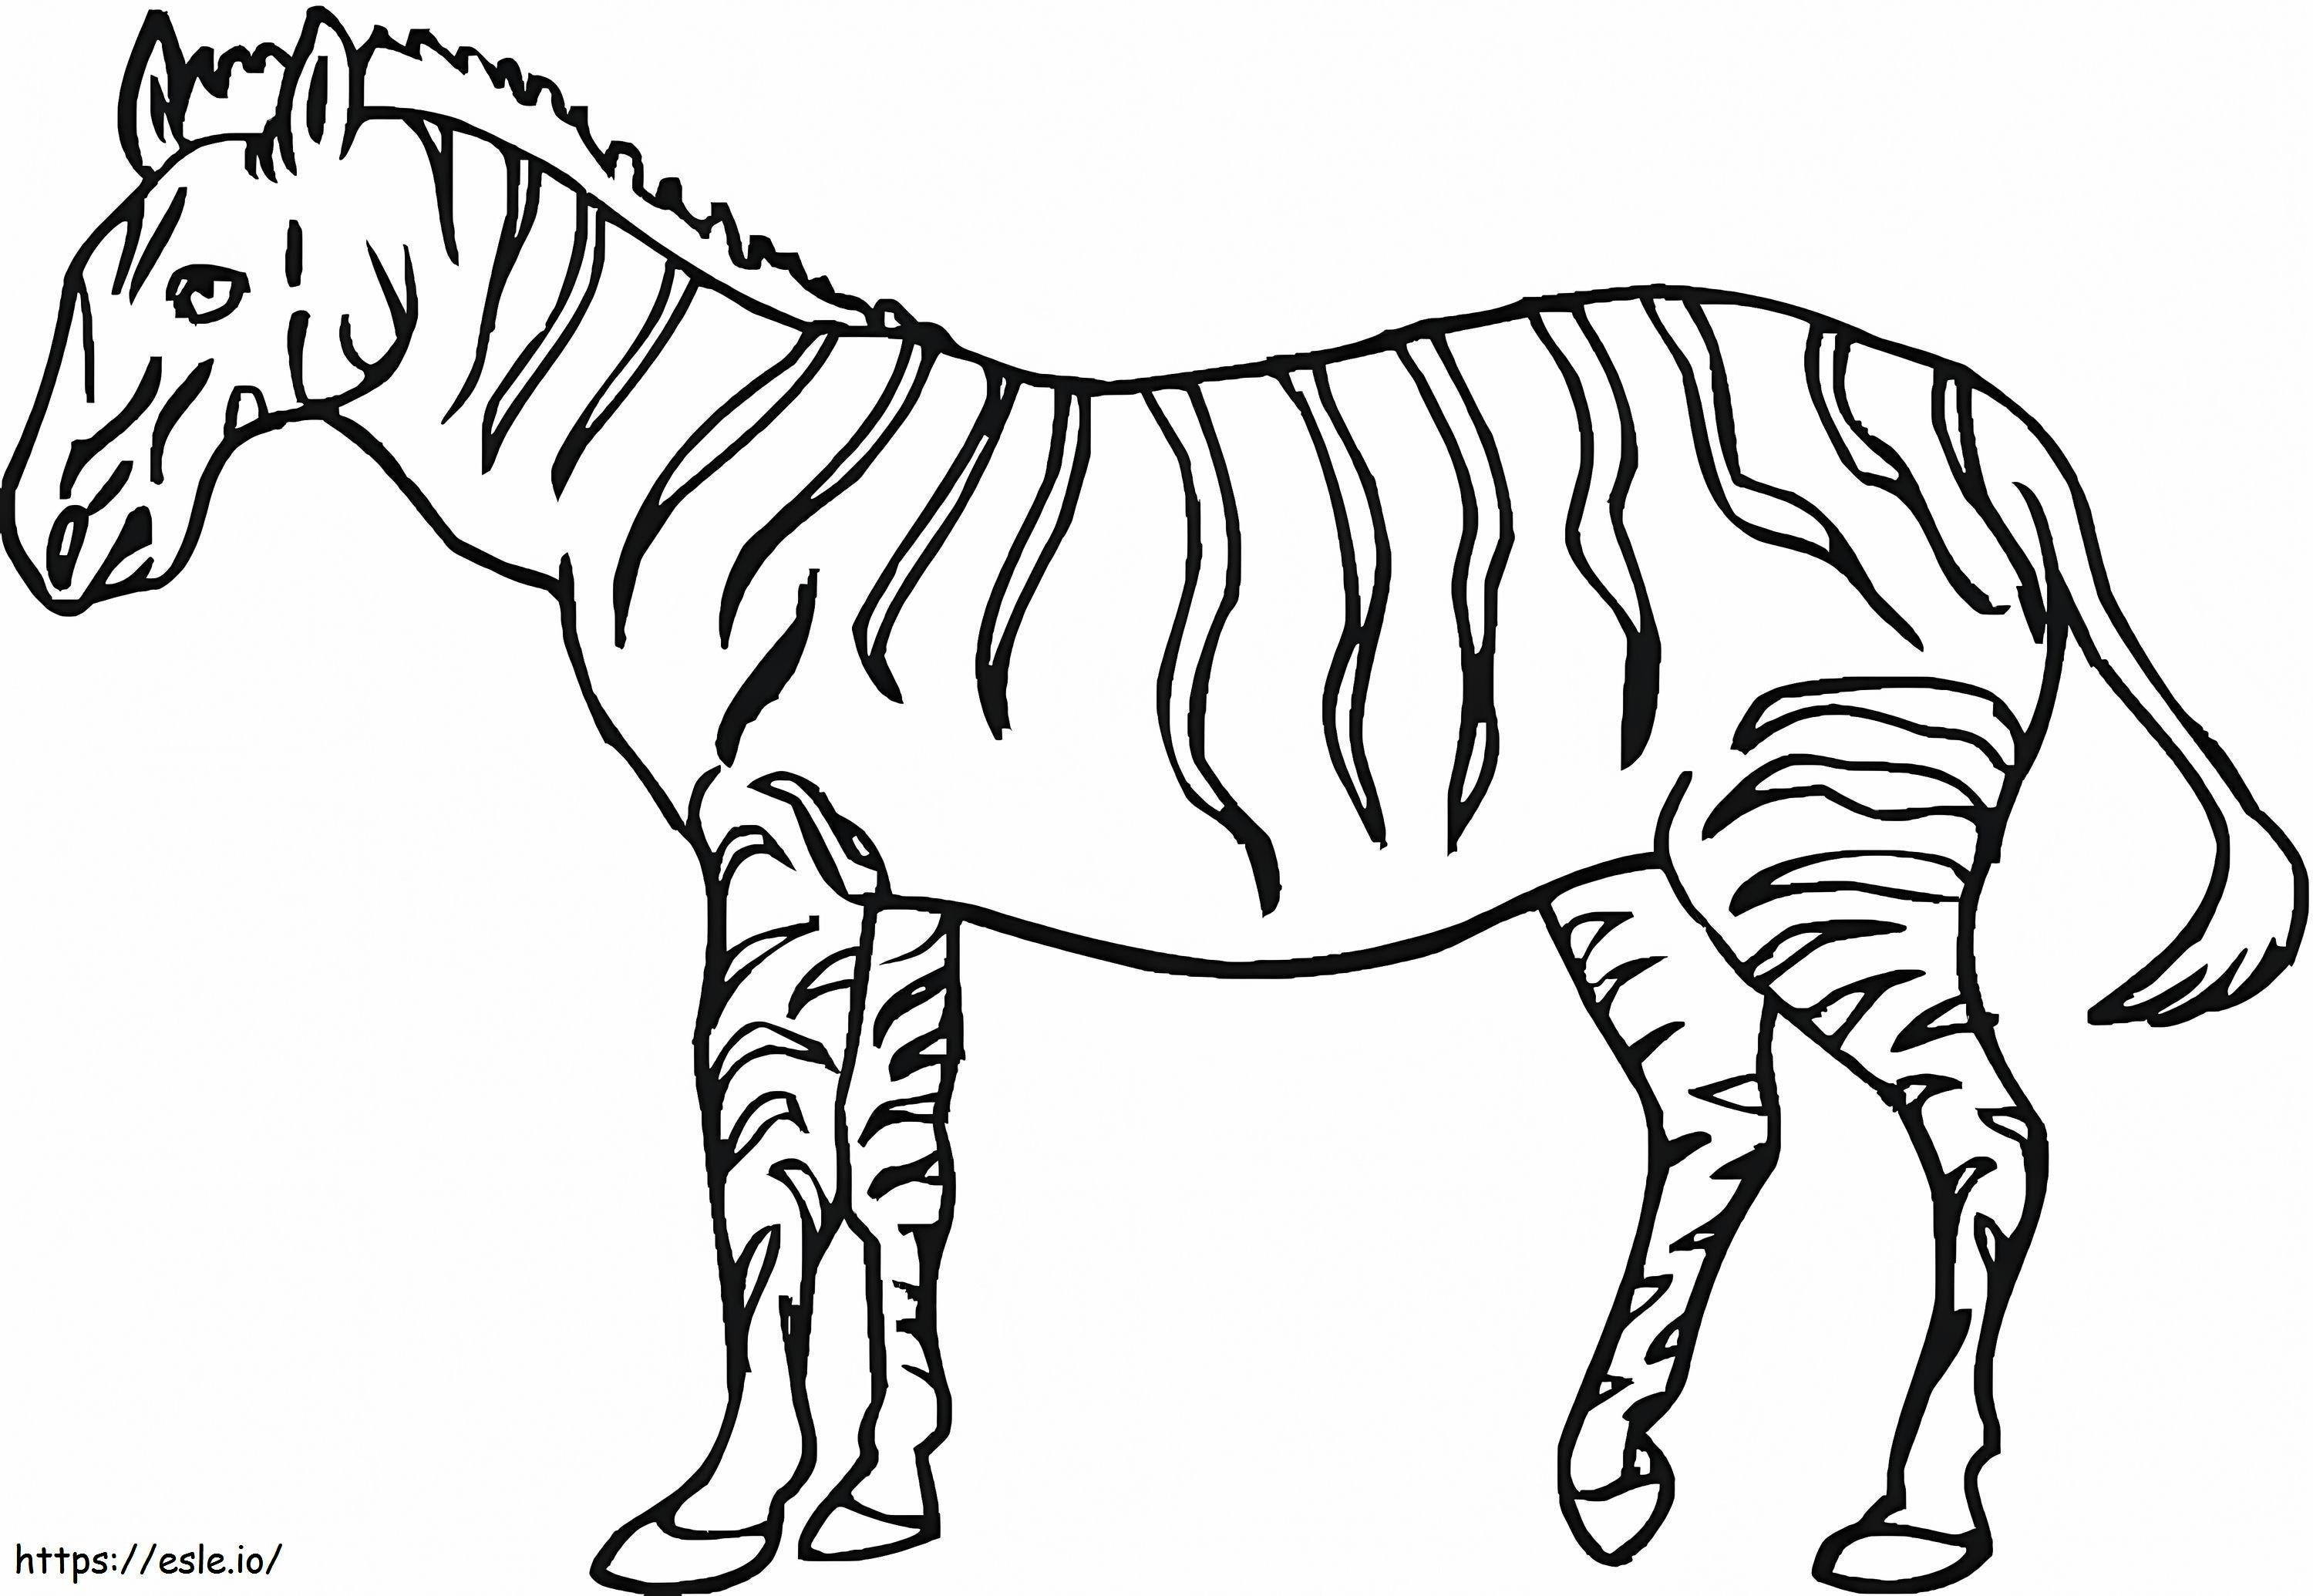 Büyük Zebra boyama